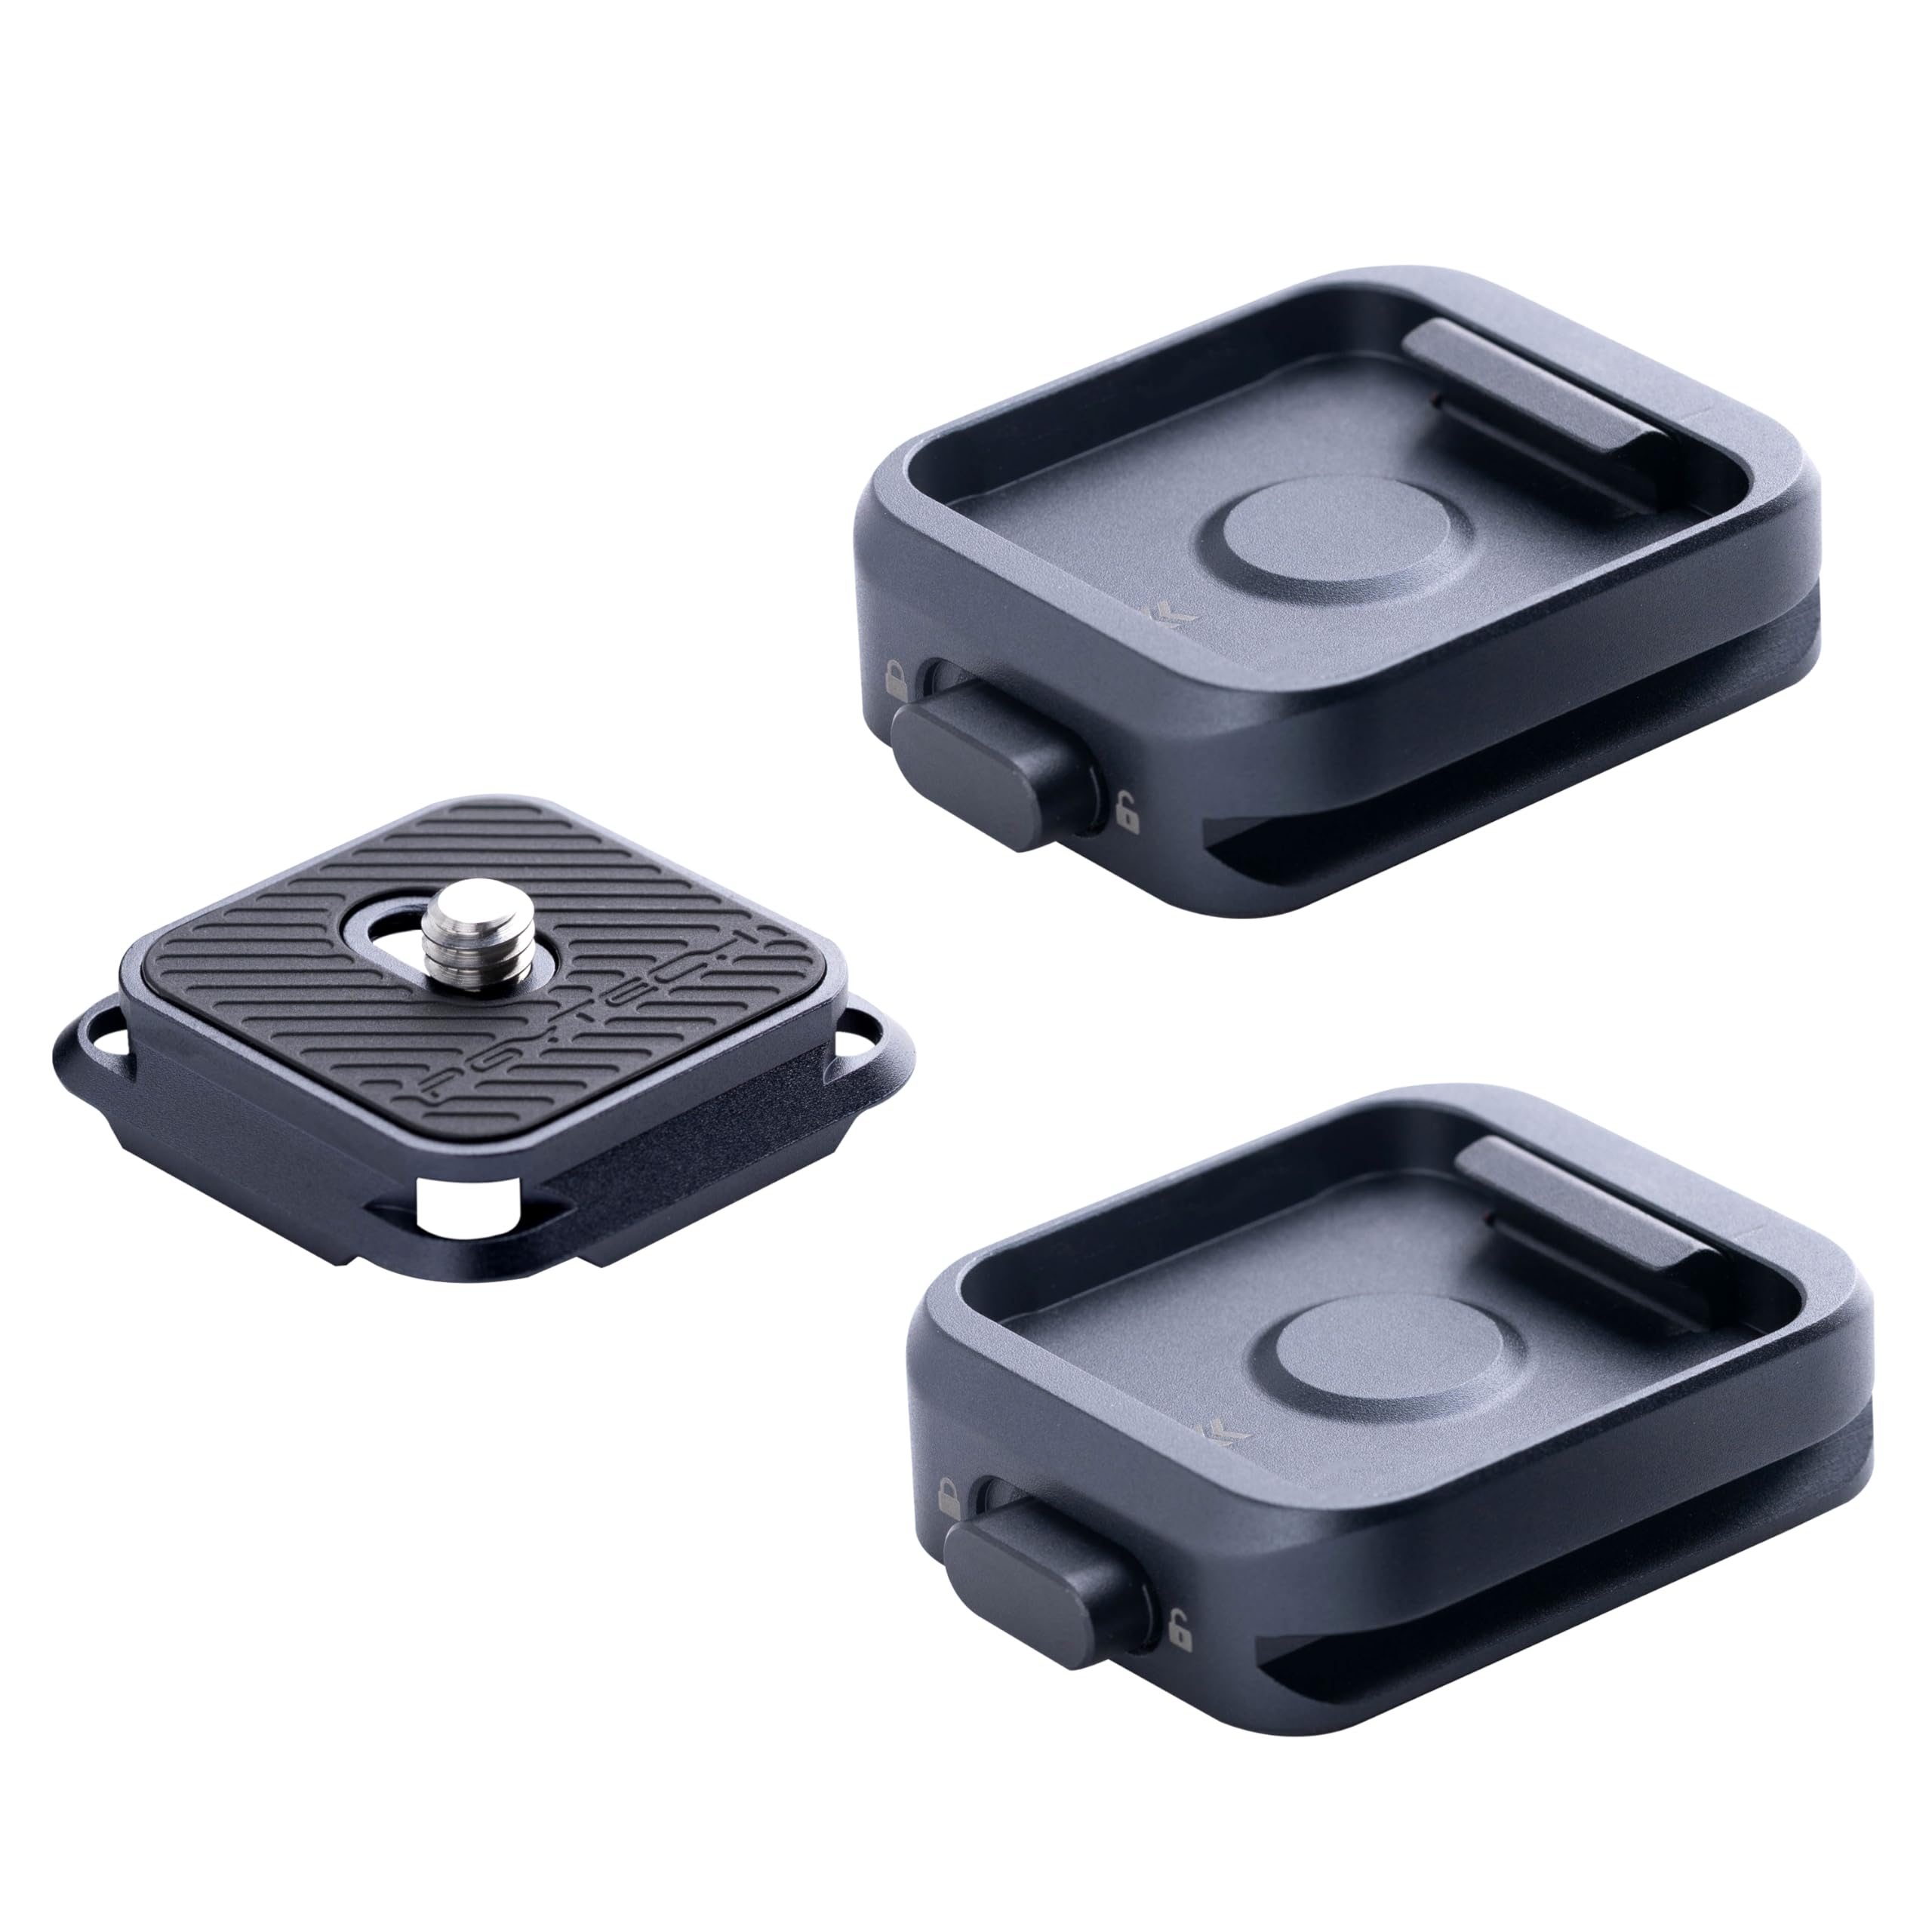 PGYTECH Schnellwechselplatte + Adapter mit Arca Swiss Clamp Kamerahalterung für Sony/Nikon/Fuji/DJI Quick Setup Mount mit Stativadapter